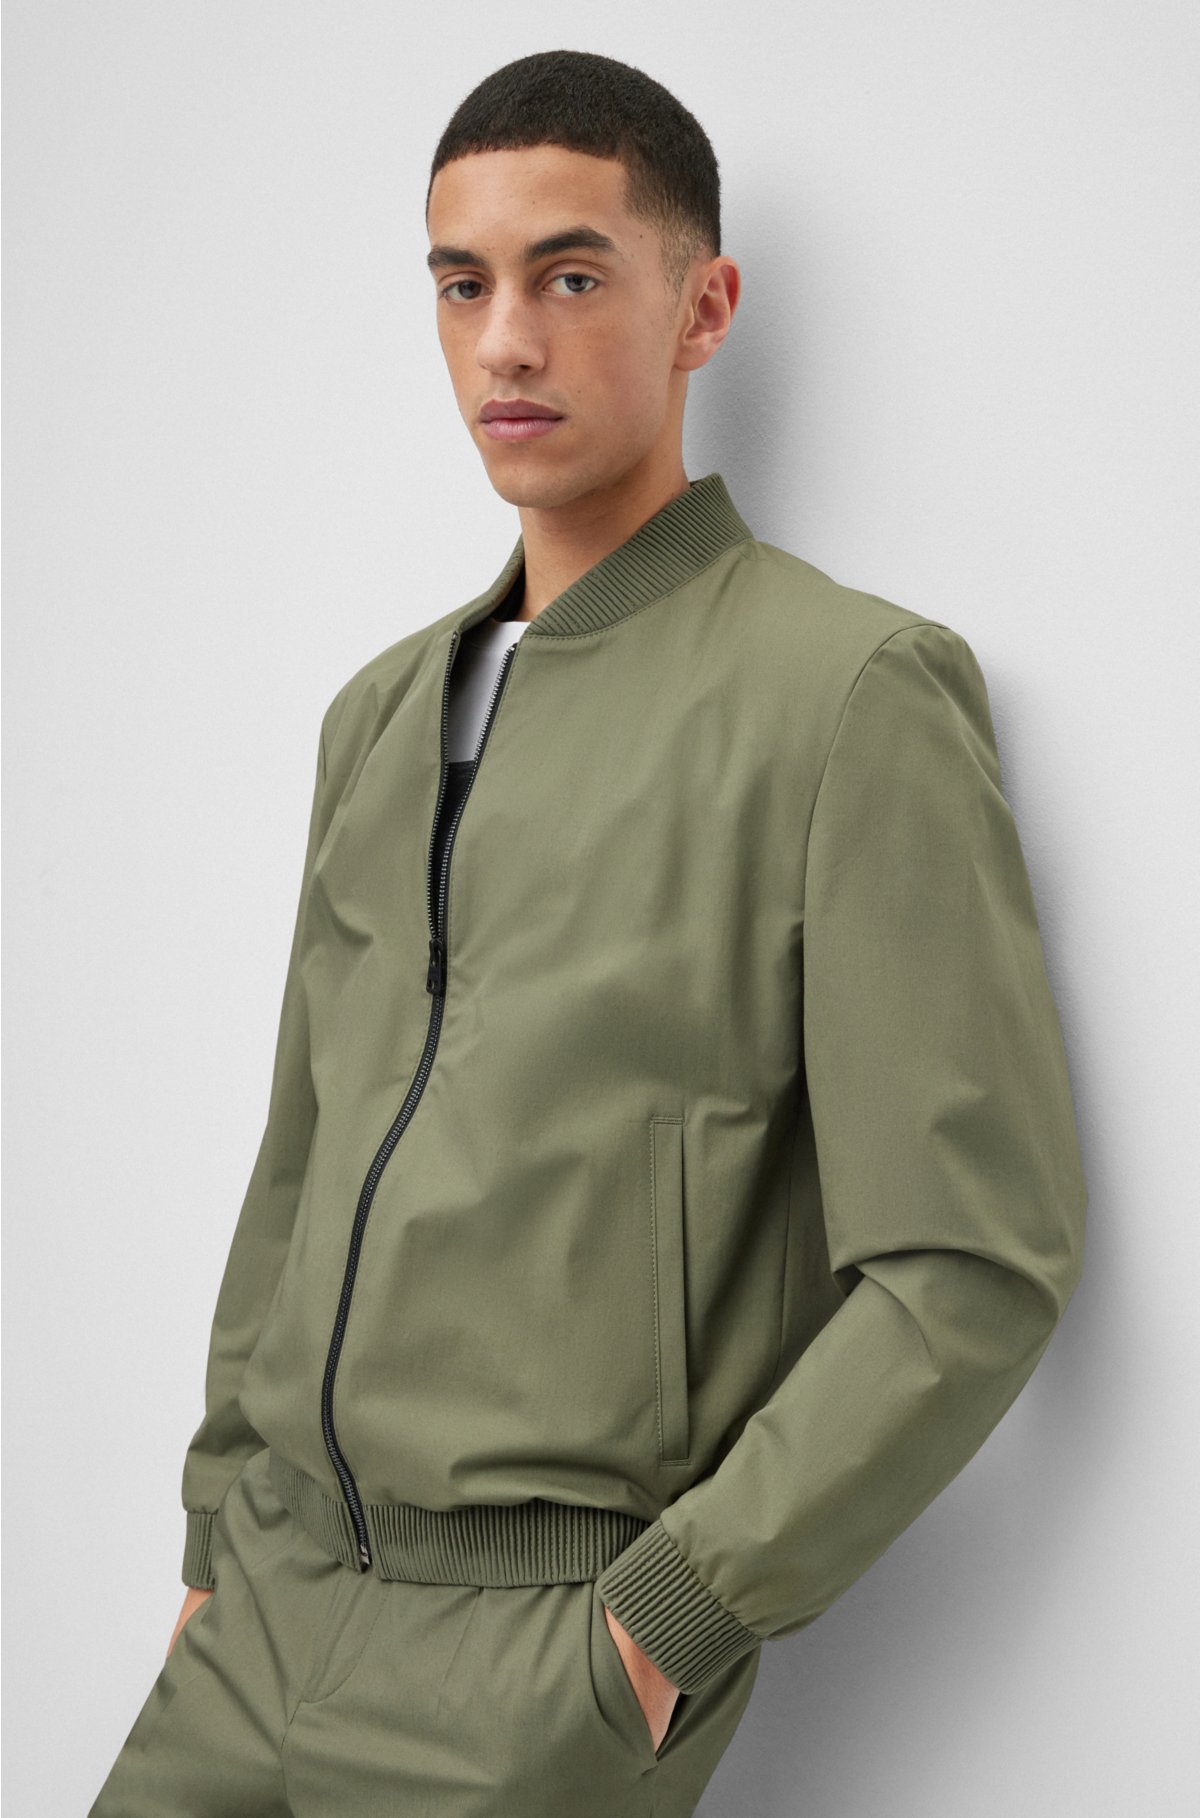 Express Men's Modern Chino Bomber Suit Jacket